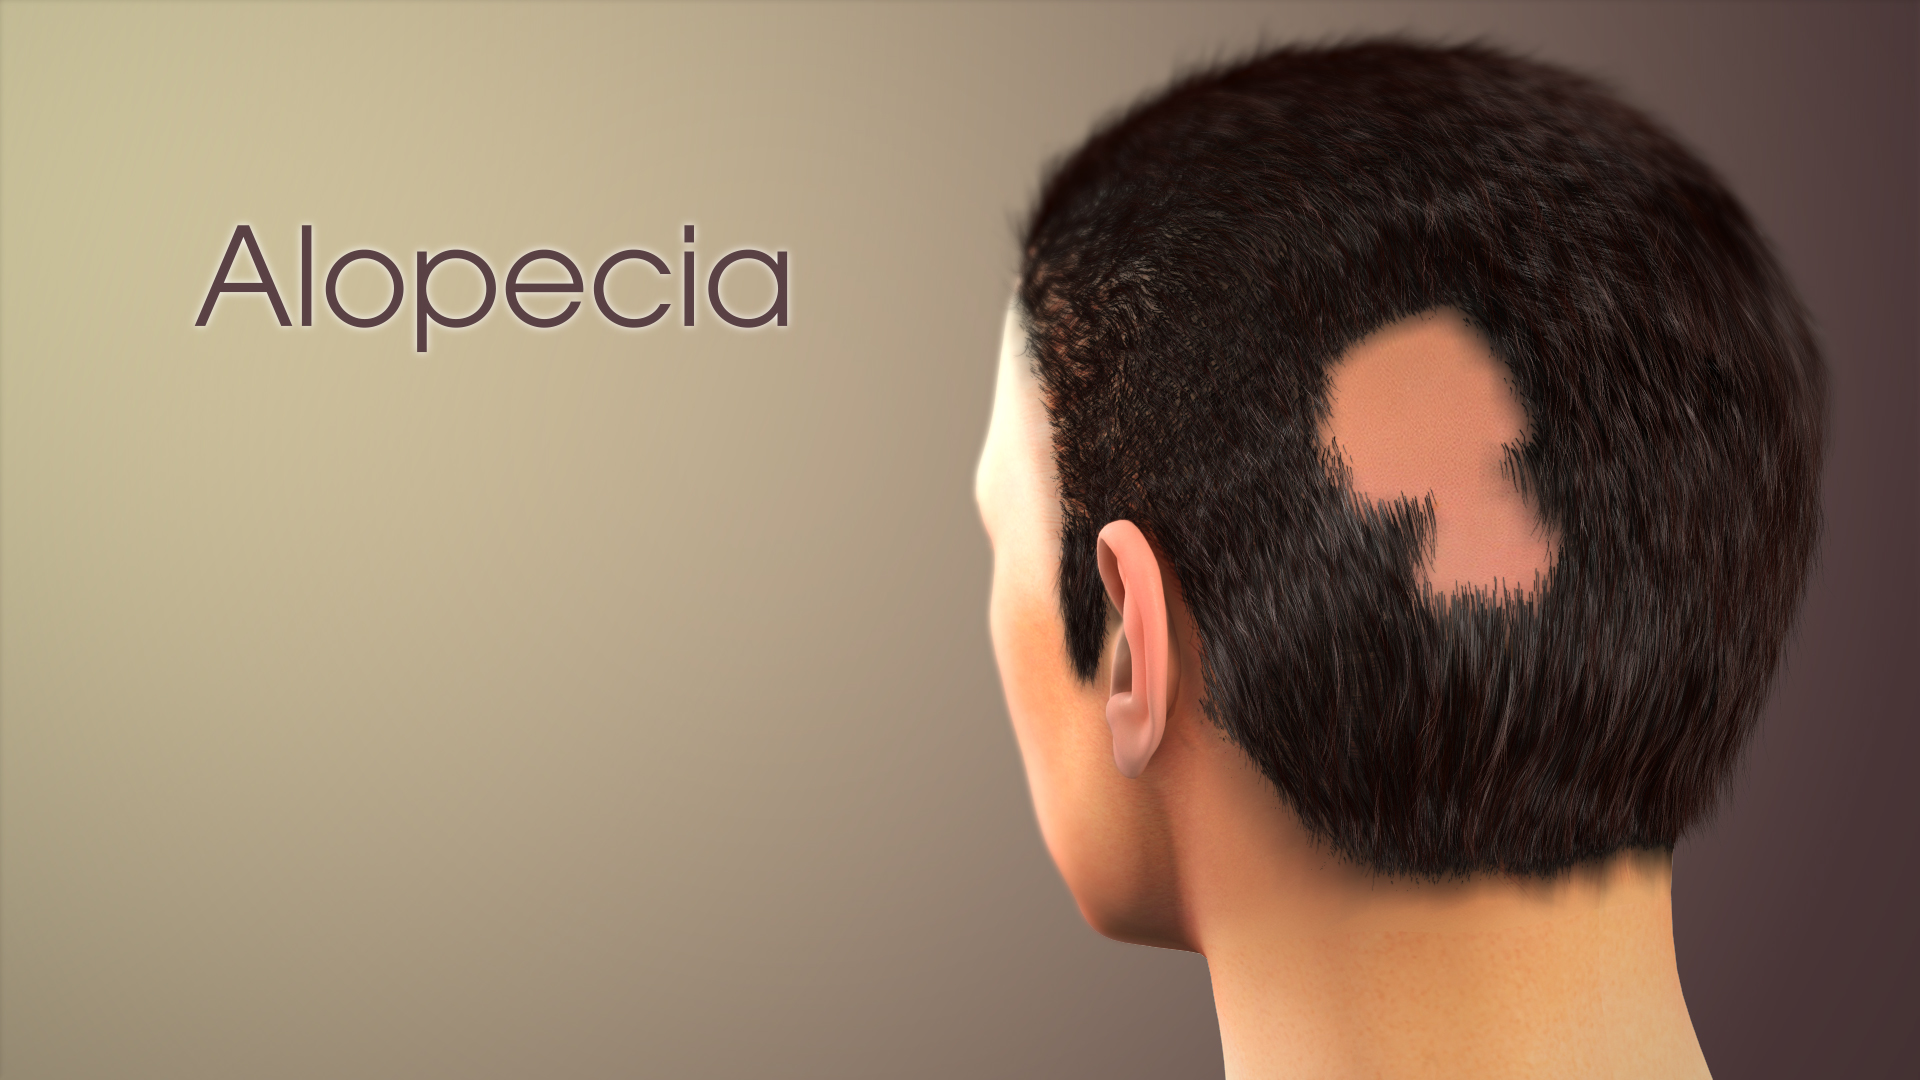 3D medical animation still showing Alopecia